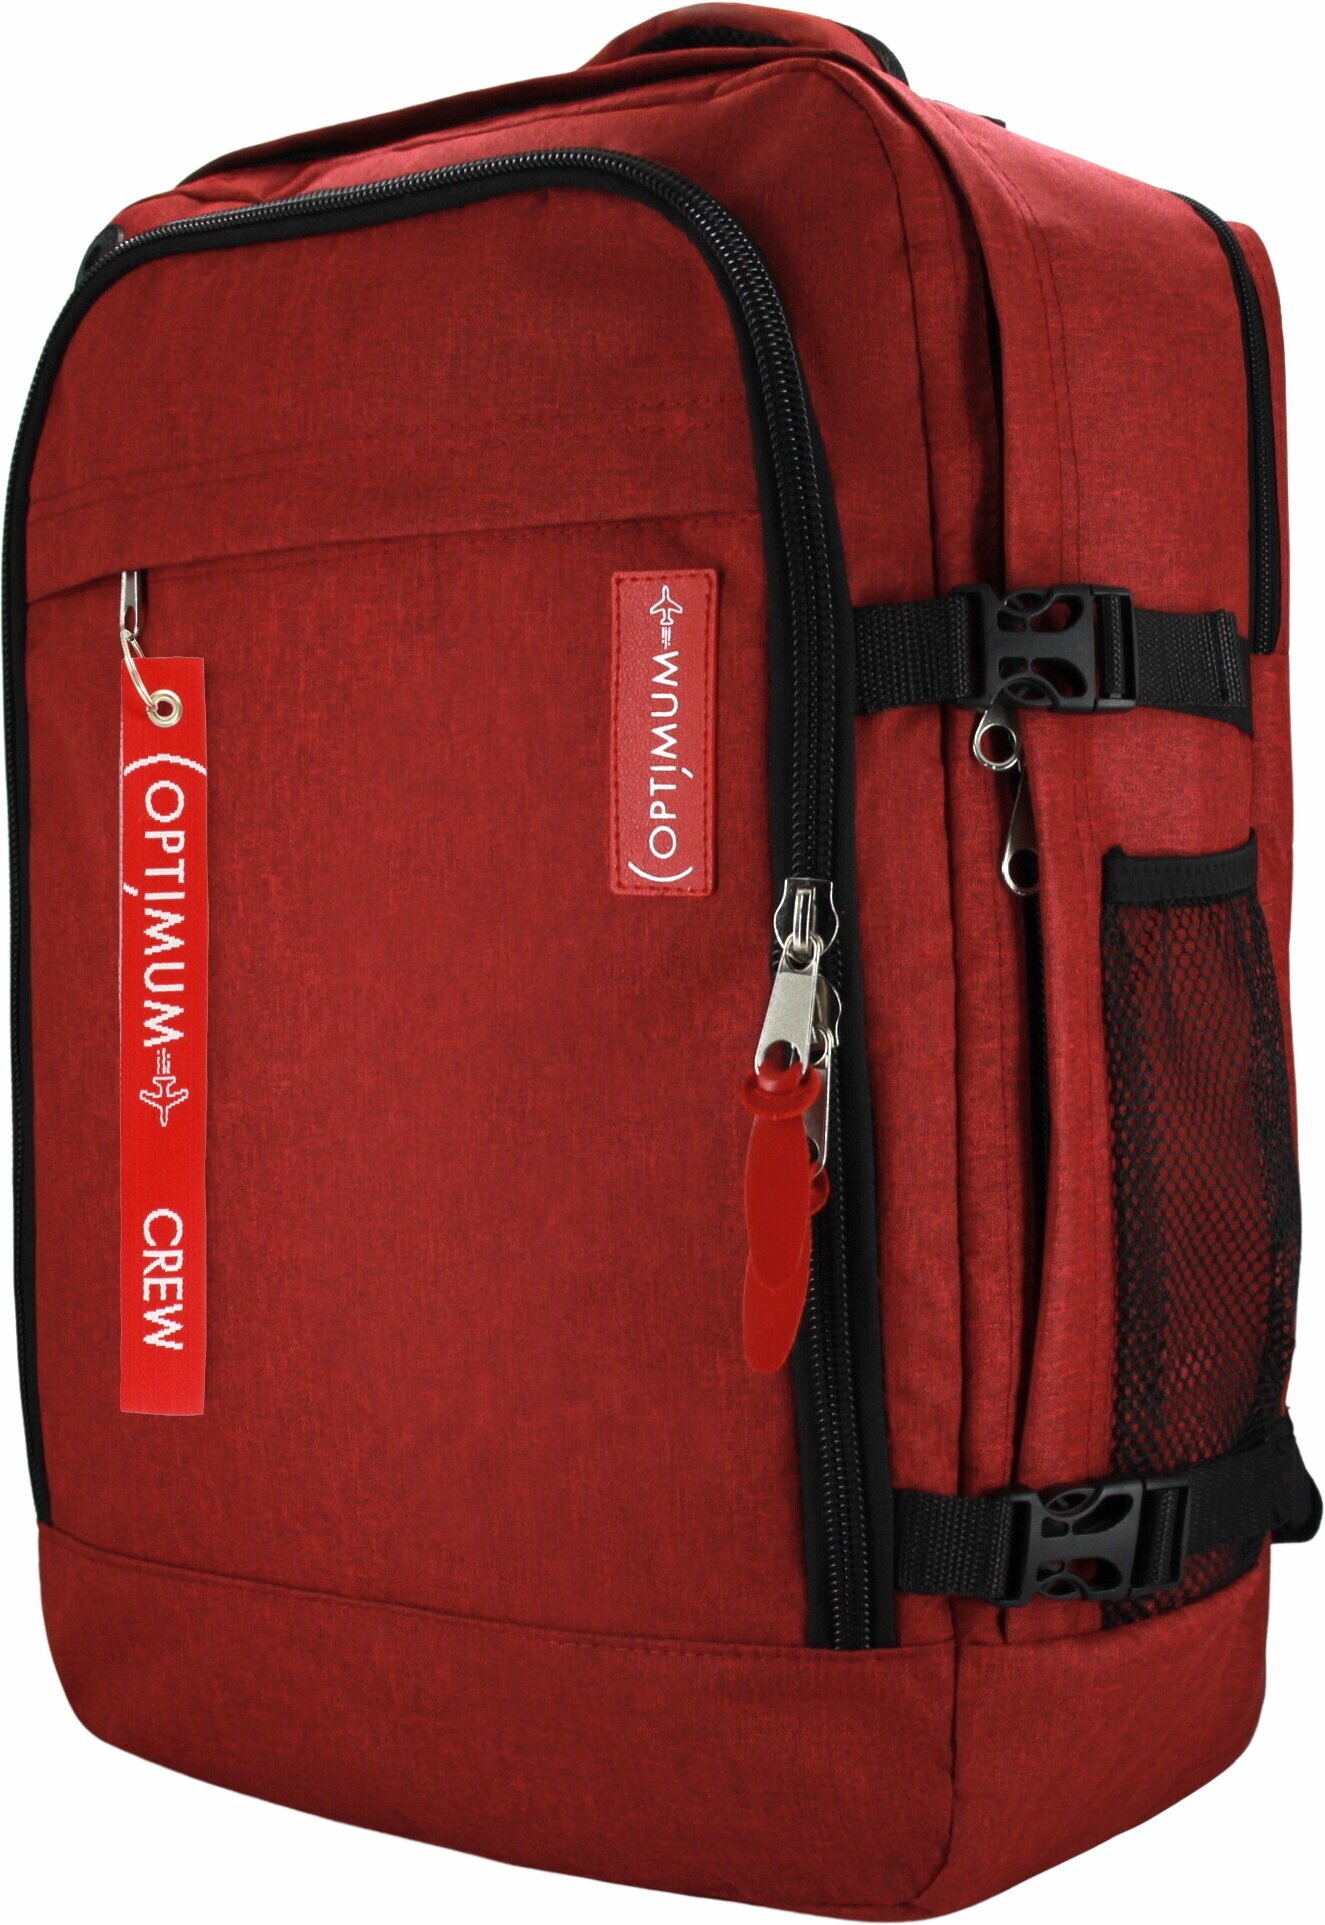 Сумка дорожная сумка-рюкзак Optimum, 44 л, 55х40х20 см, ручная кладь, отделение для ноутбука, фиксирующие ремни, водонепроницаемая, красный - фотография № 5